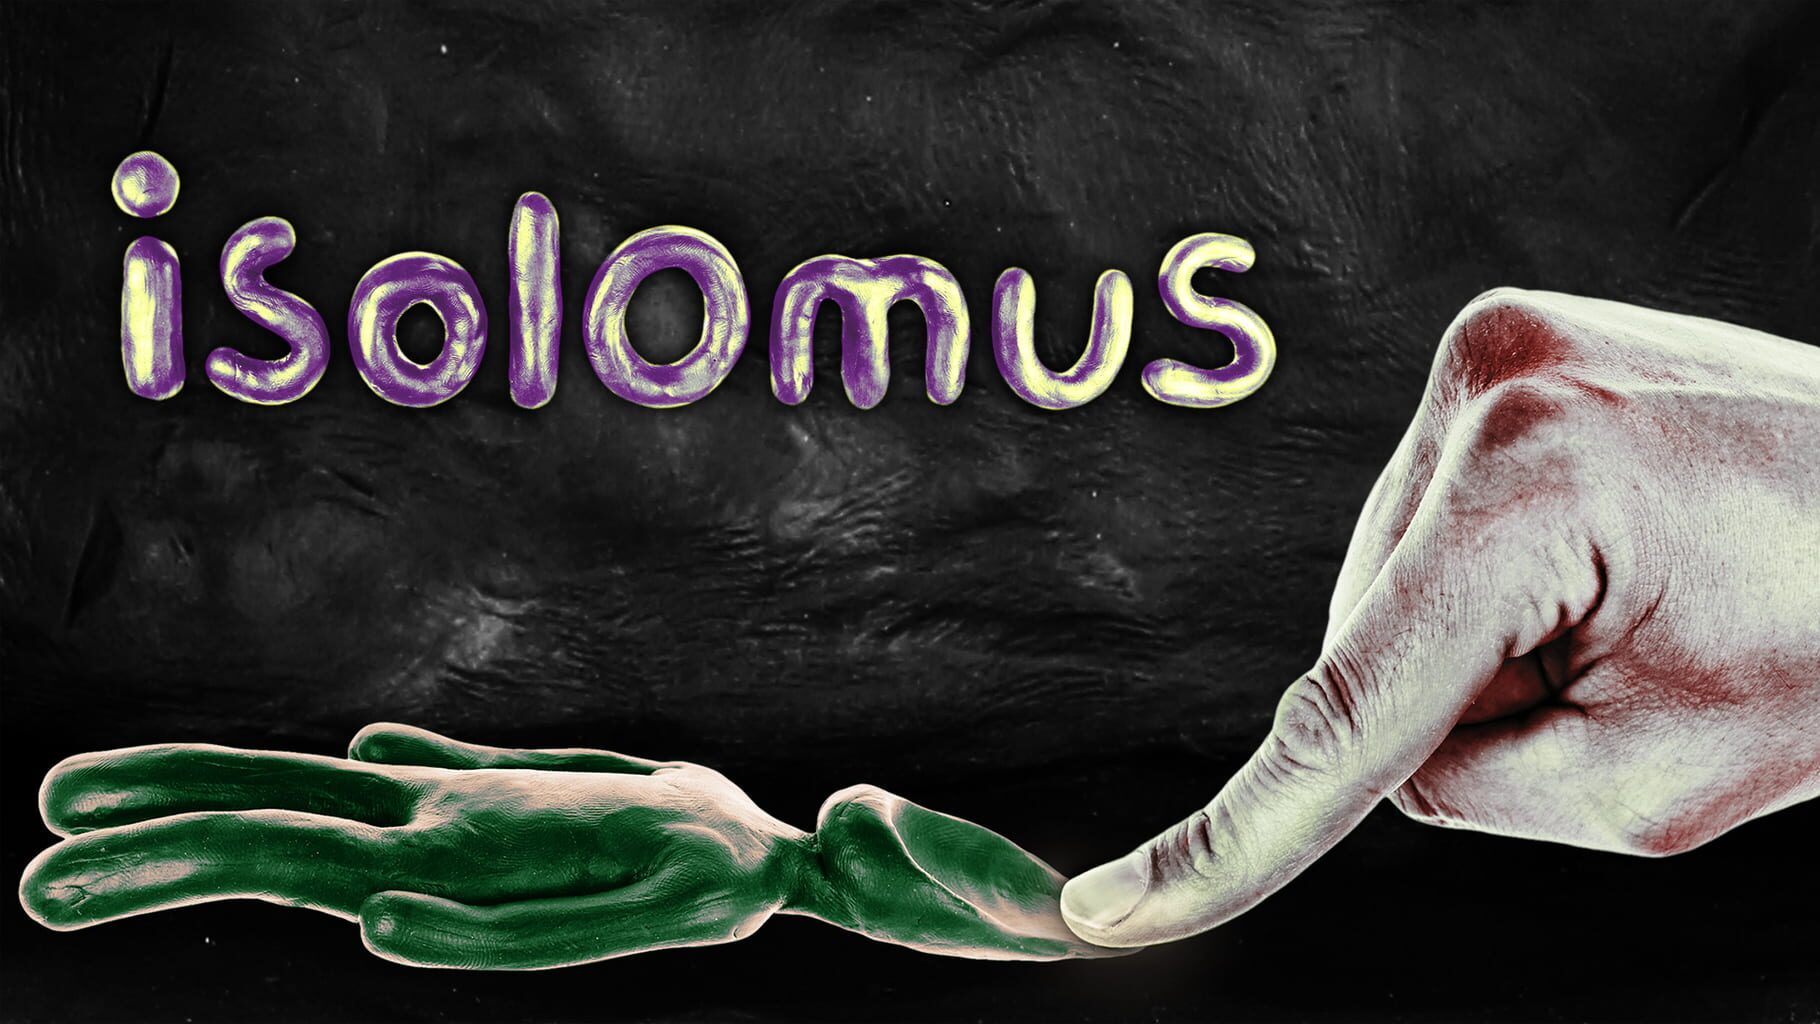 Isolomus artwork